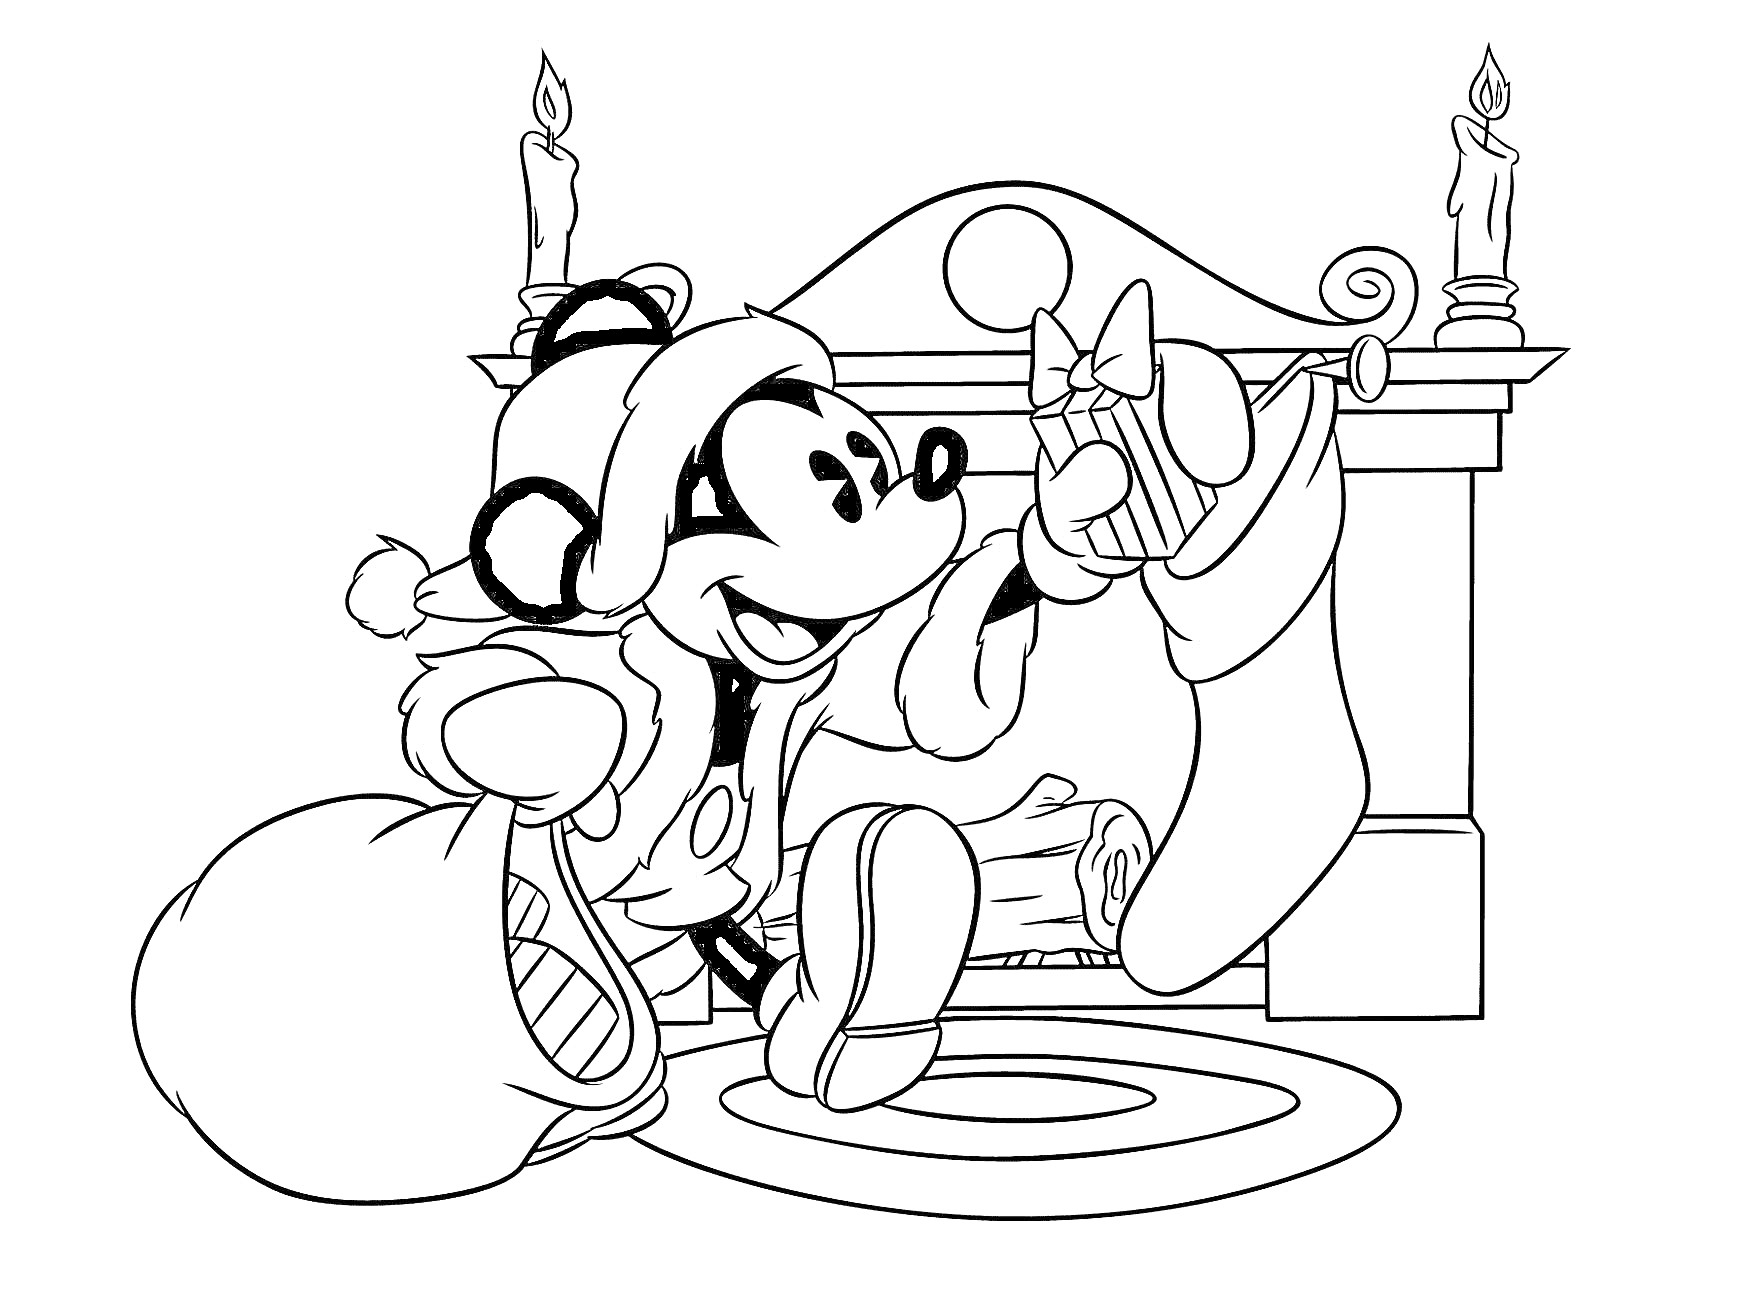 Раскраска Микки Маус в новогоднем костюме развешивает новогодние носки у камина, рядом лежит мешок с подарками, на камине стоят две горящие свечи